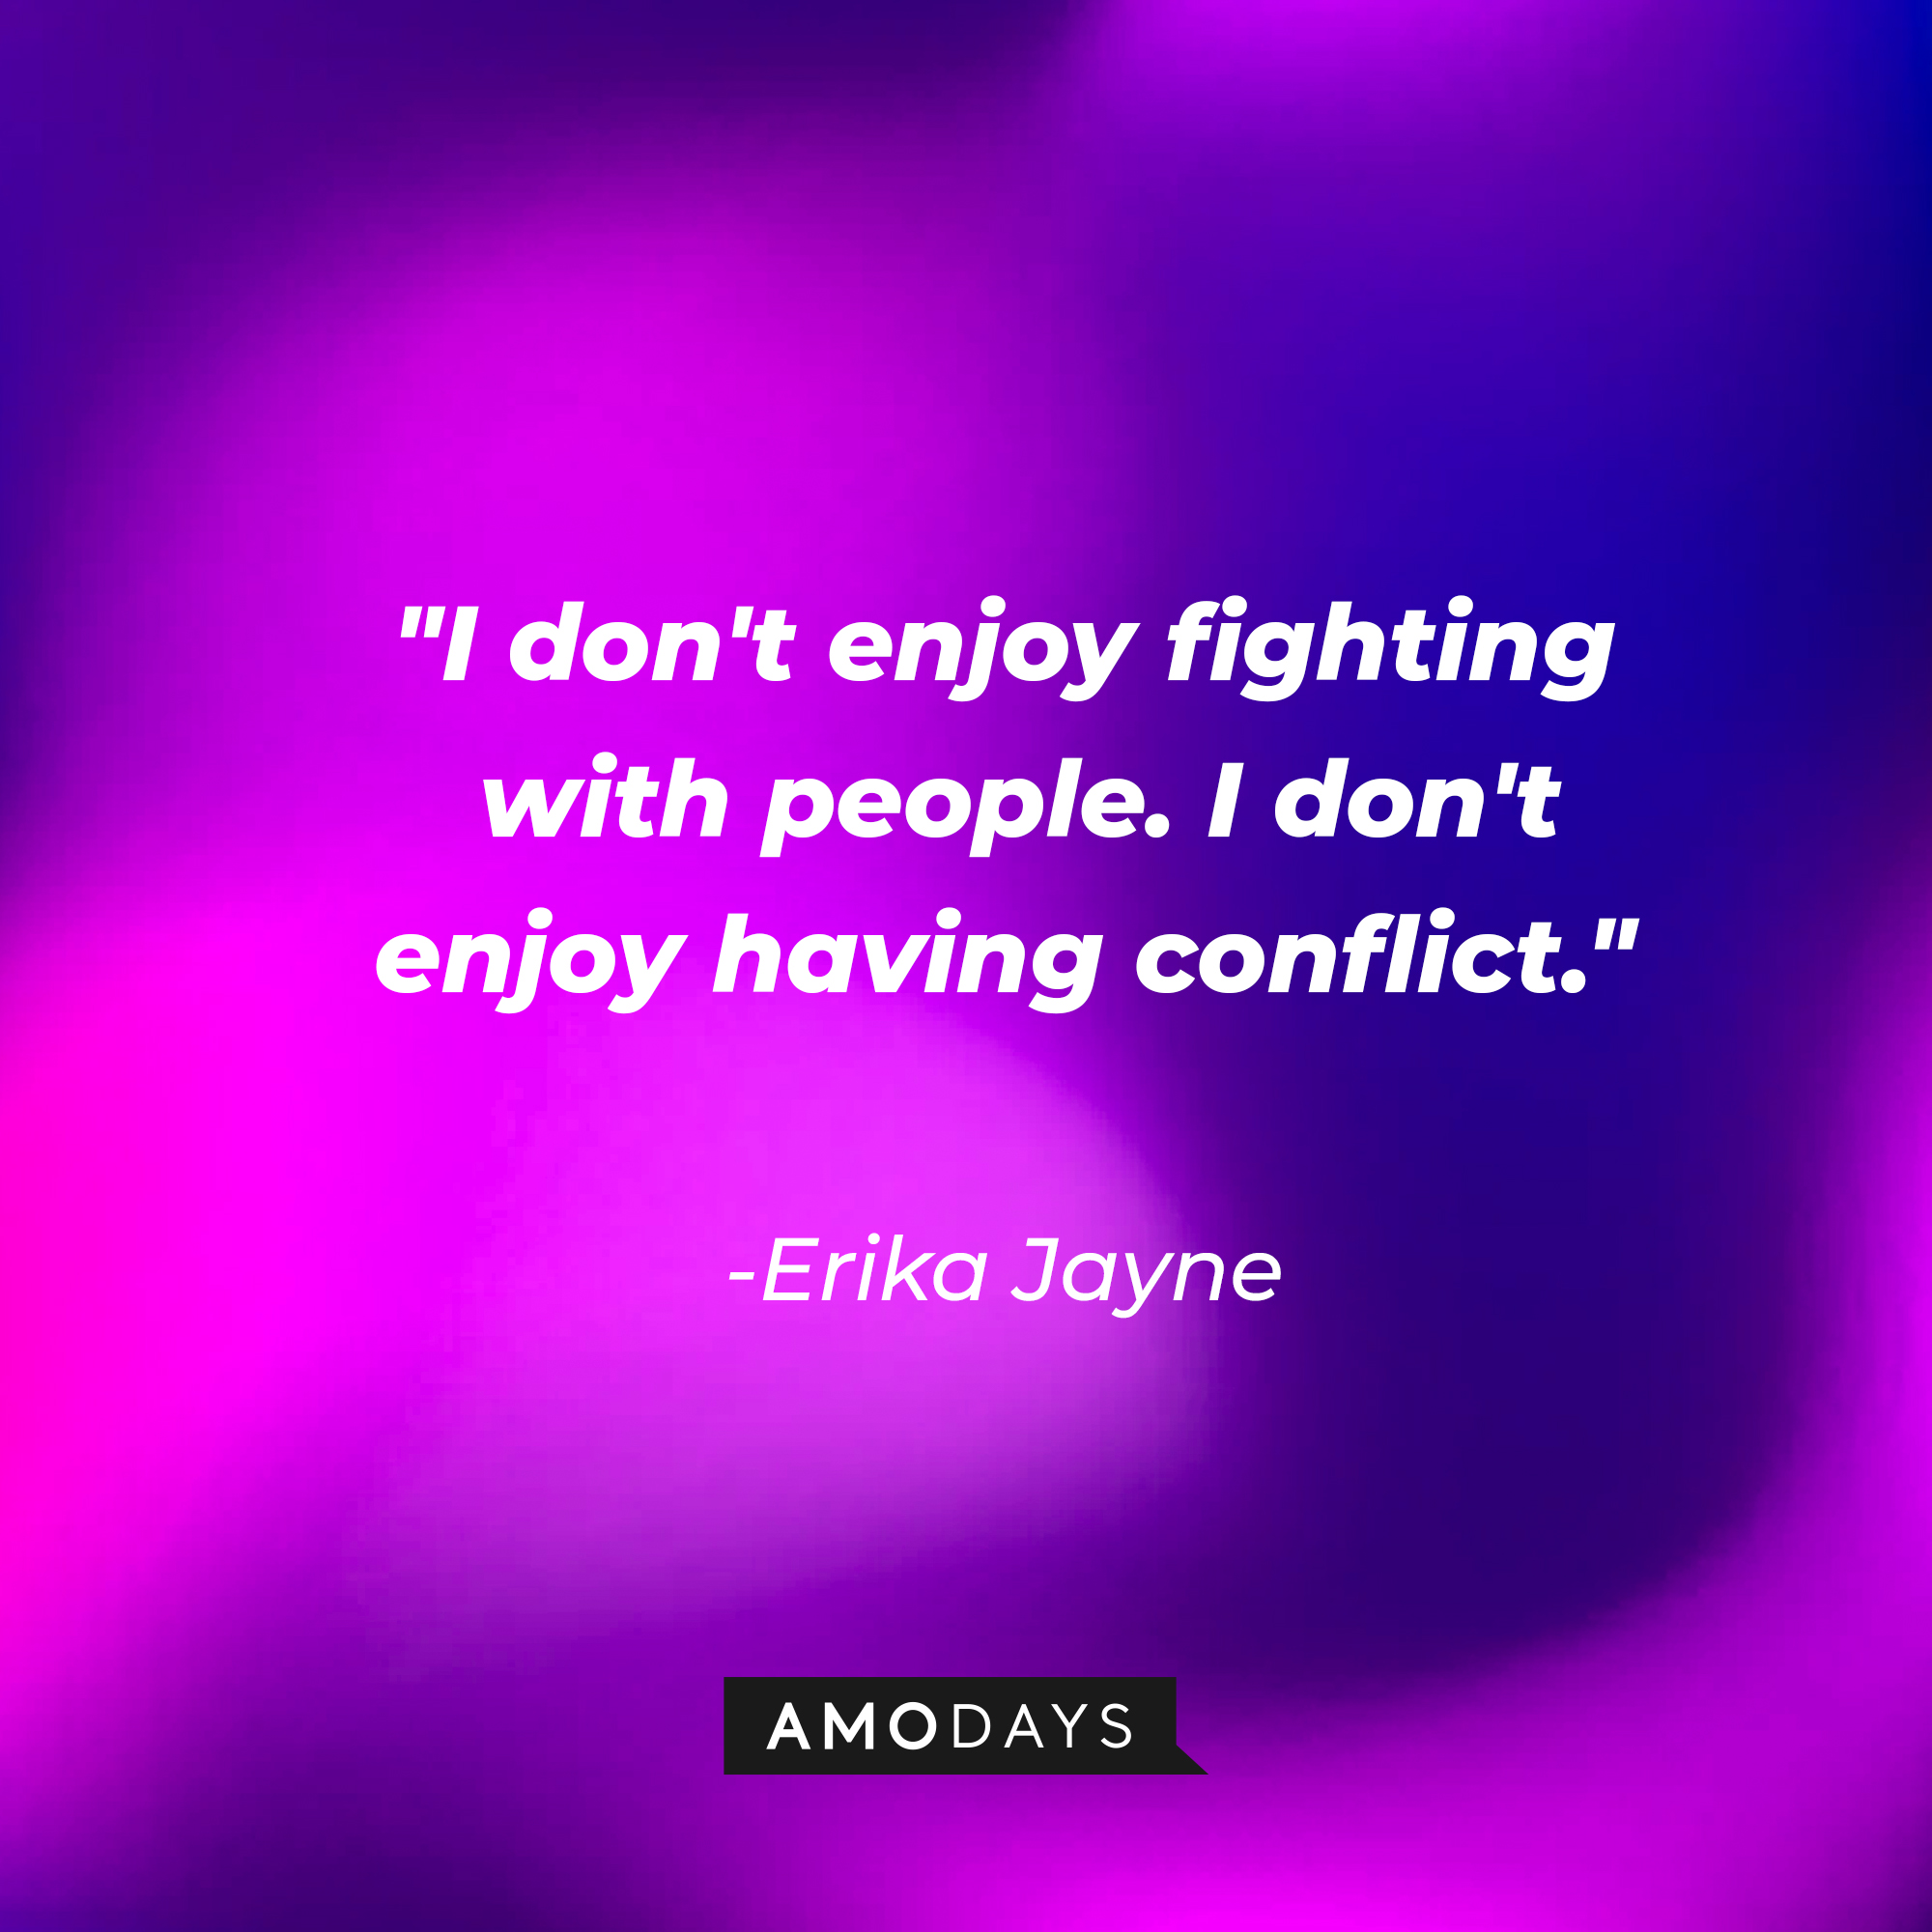 Erika Jayne’s quote: "I don't enjoy fighting with people. I don't enjoy having conflict." | Image: Amodays